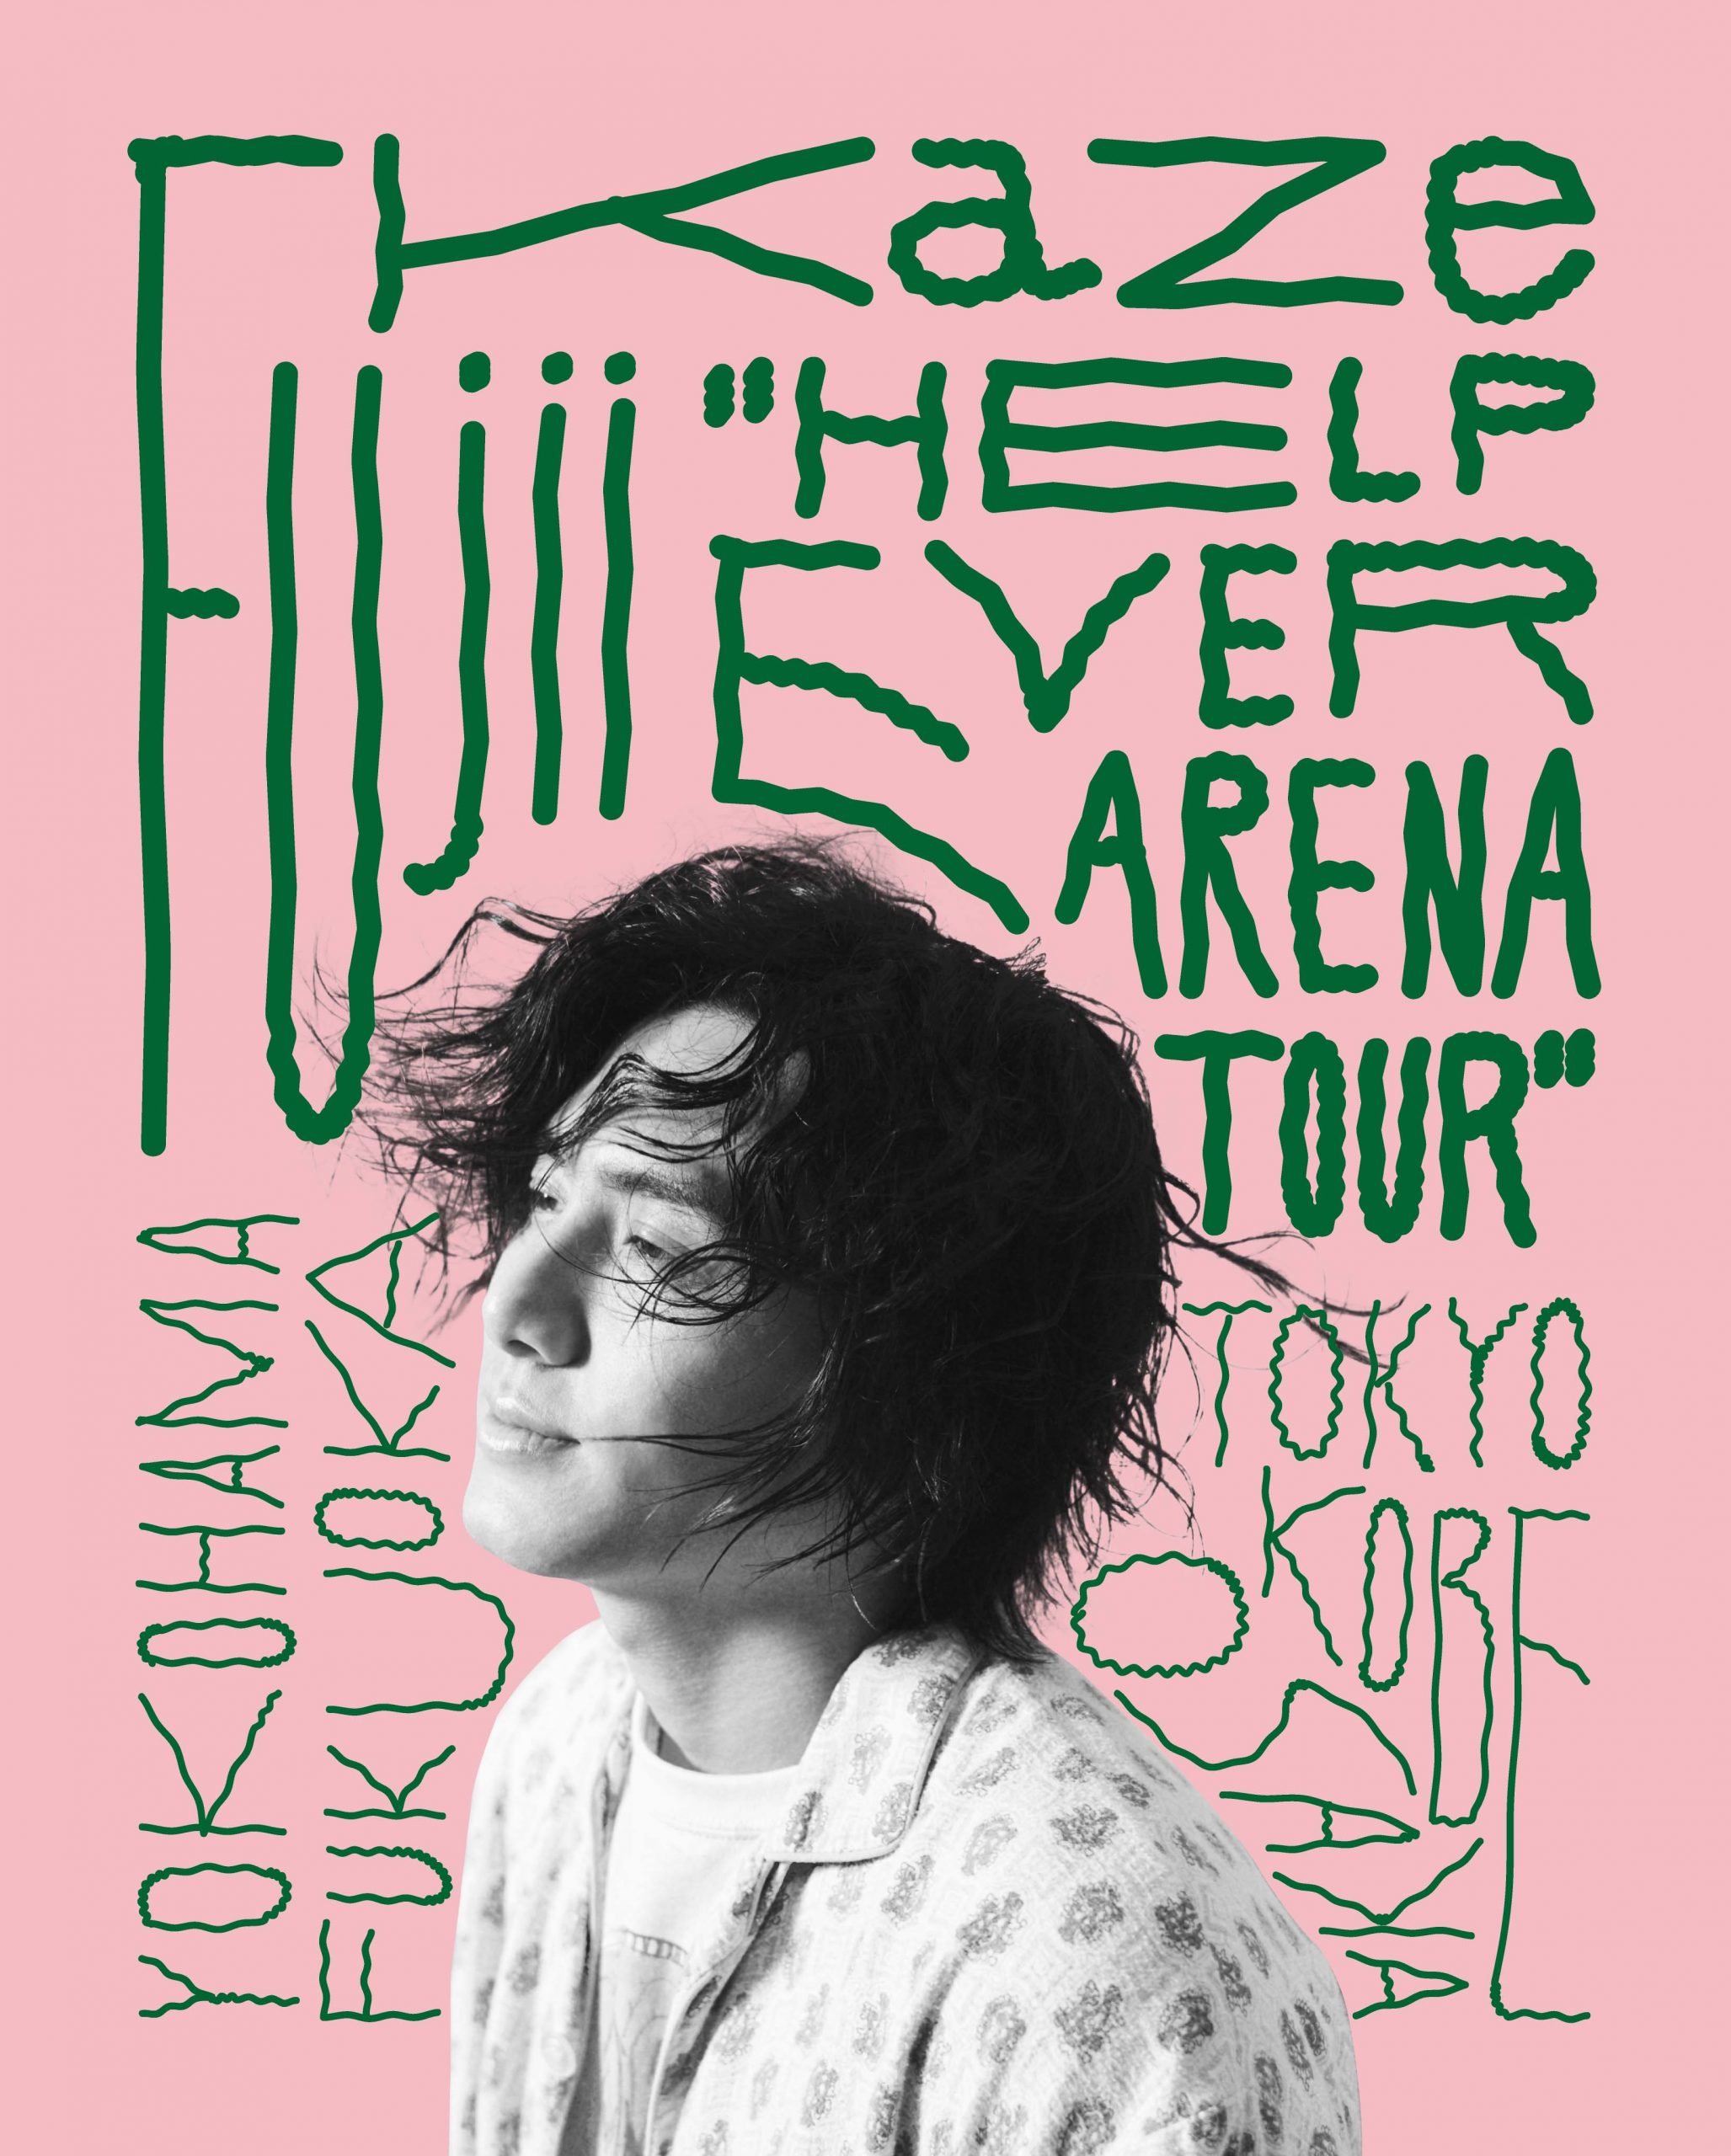 藤井風 ❤️ HELP EVER ARENA TOUR